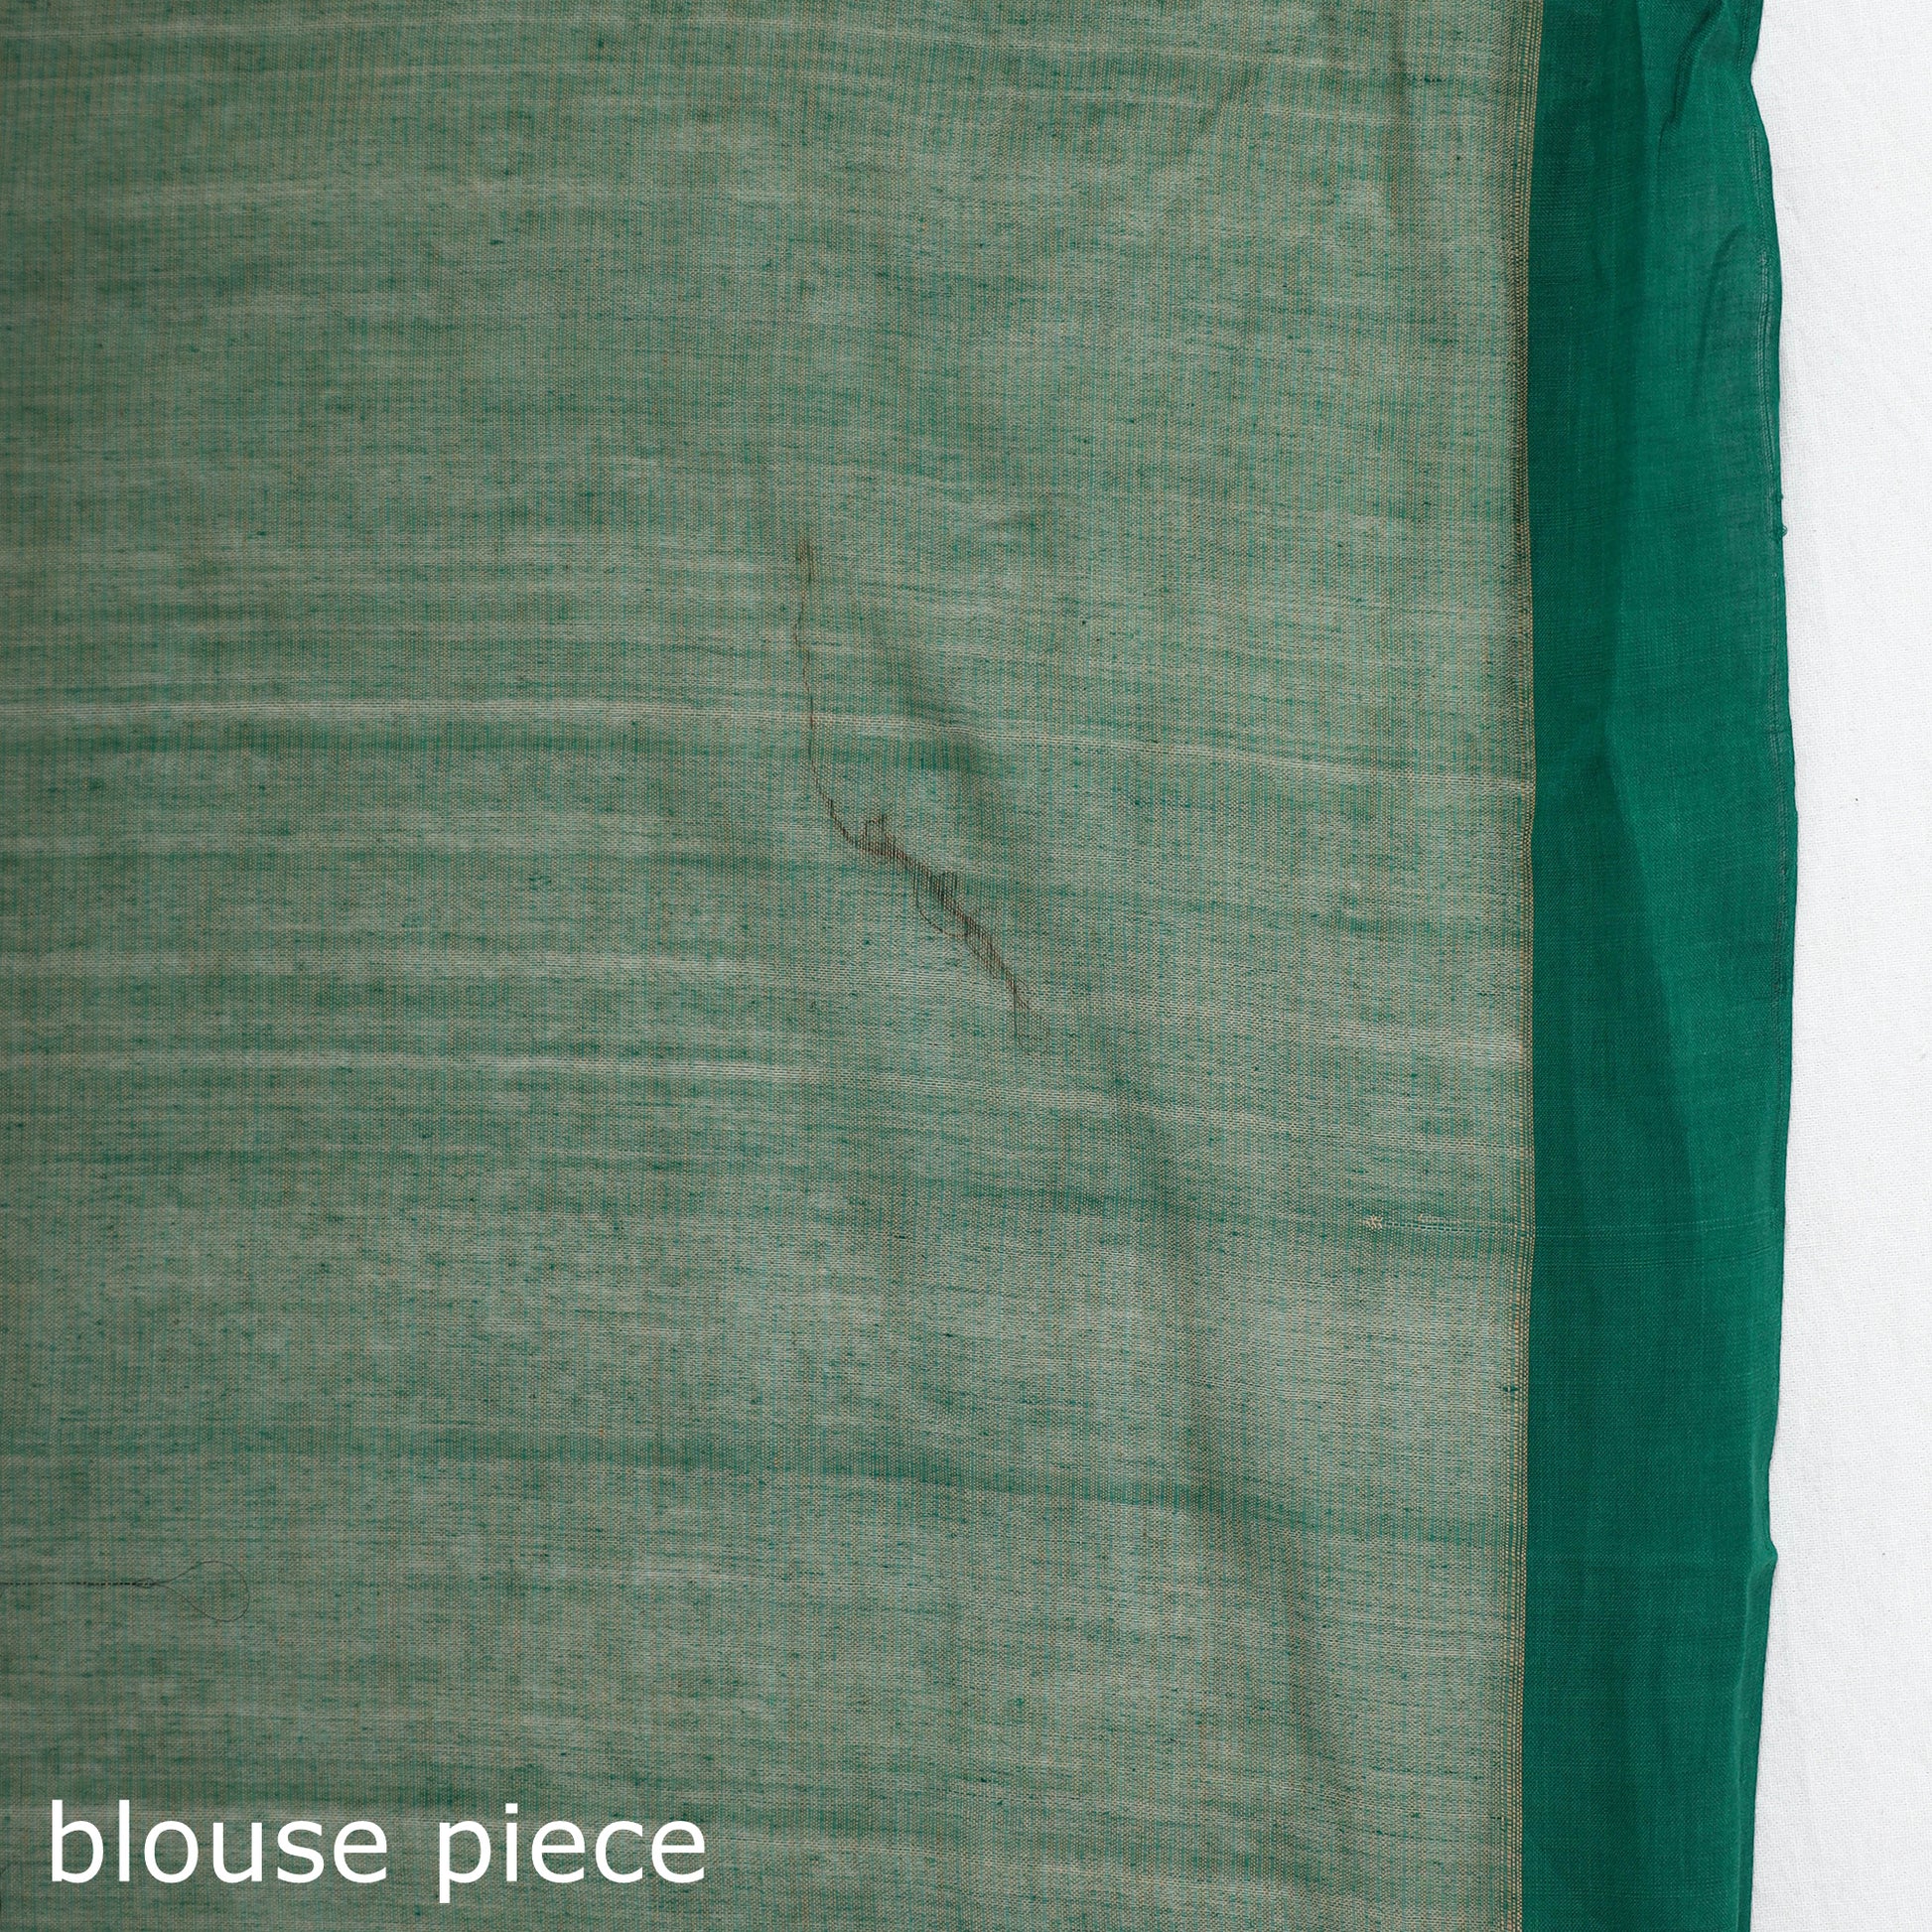 plain cotton saree